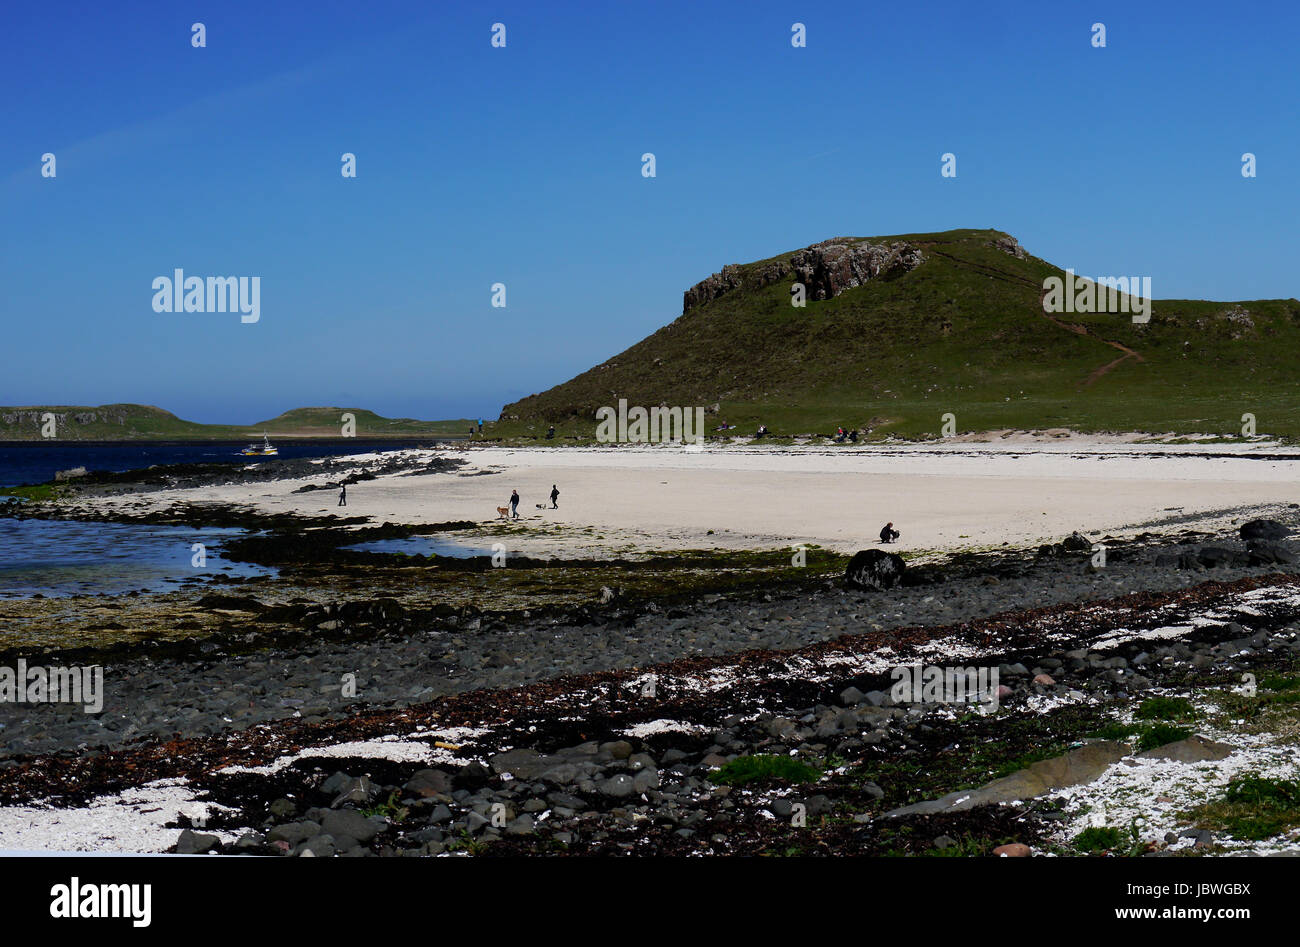 La gente Wallking en Coral Beach cerca Claigan, Dunvagan, Isla de Skye, Escocia, Reino Unido Foto de stock